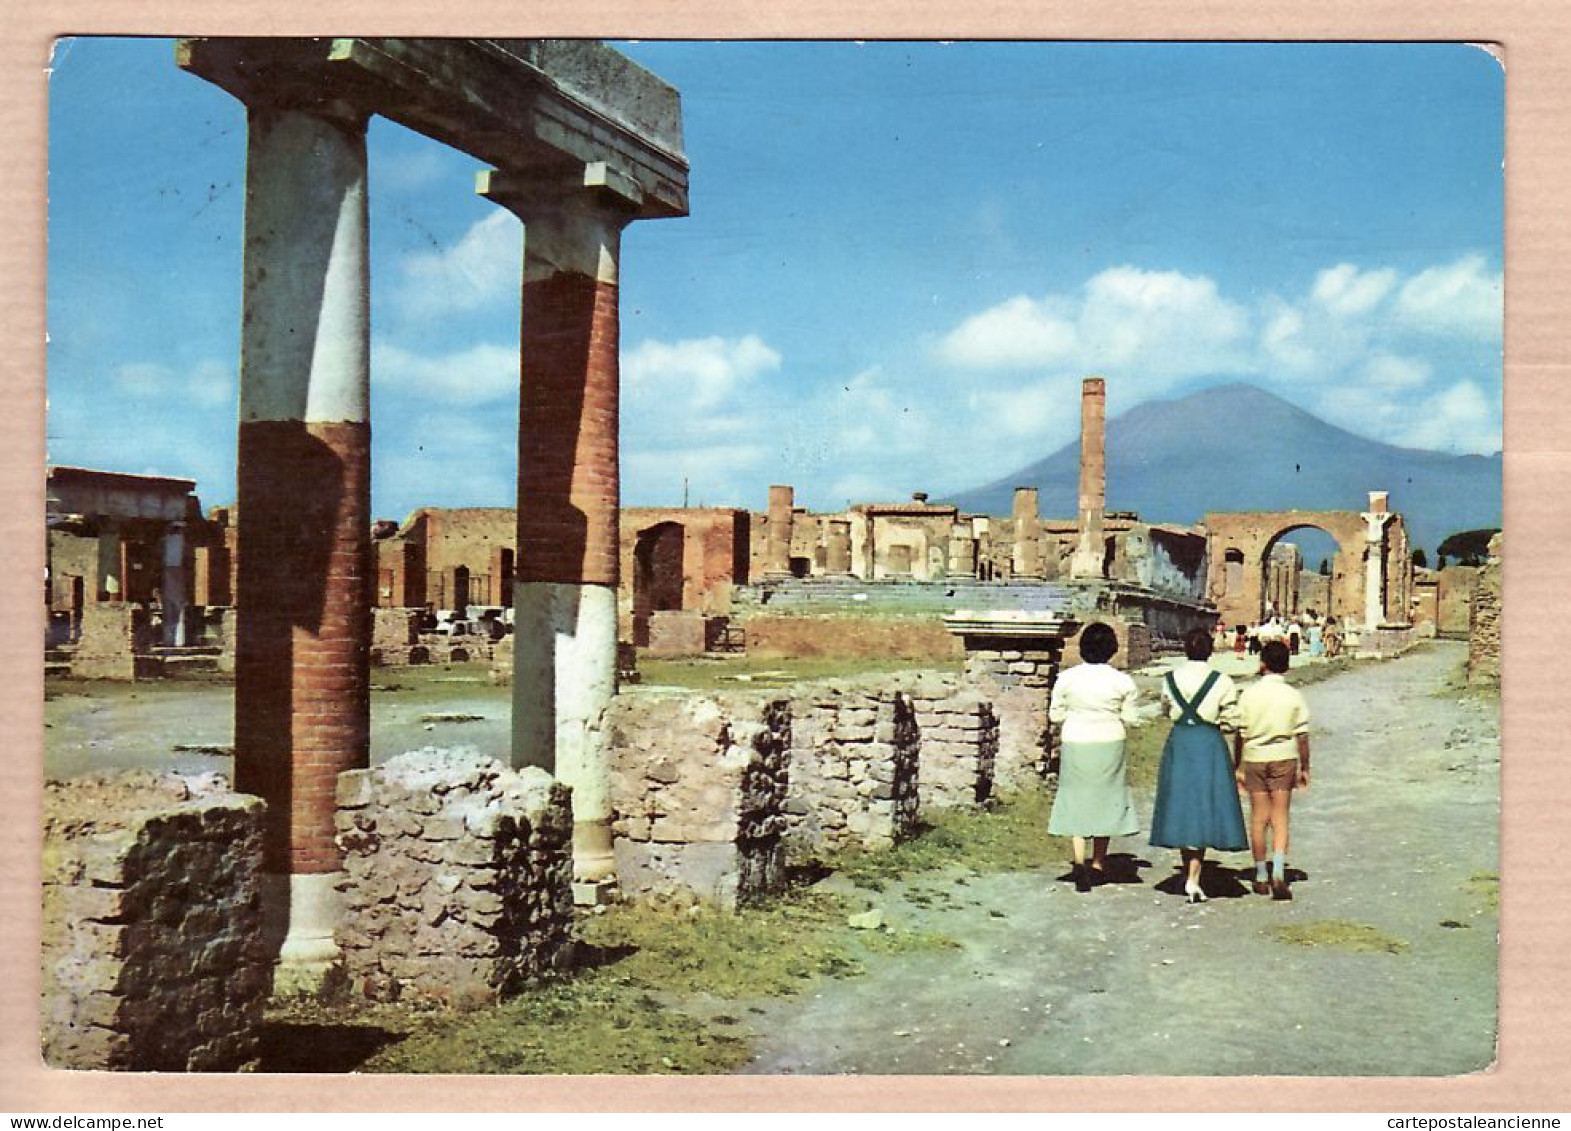 26847 / ⭐ POMPEI Campania Veduta Del FORO Vue Du Forum 1961 CARCAVALLO N°10 Italy Italie Italia Italien  - Pompei